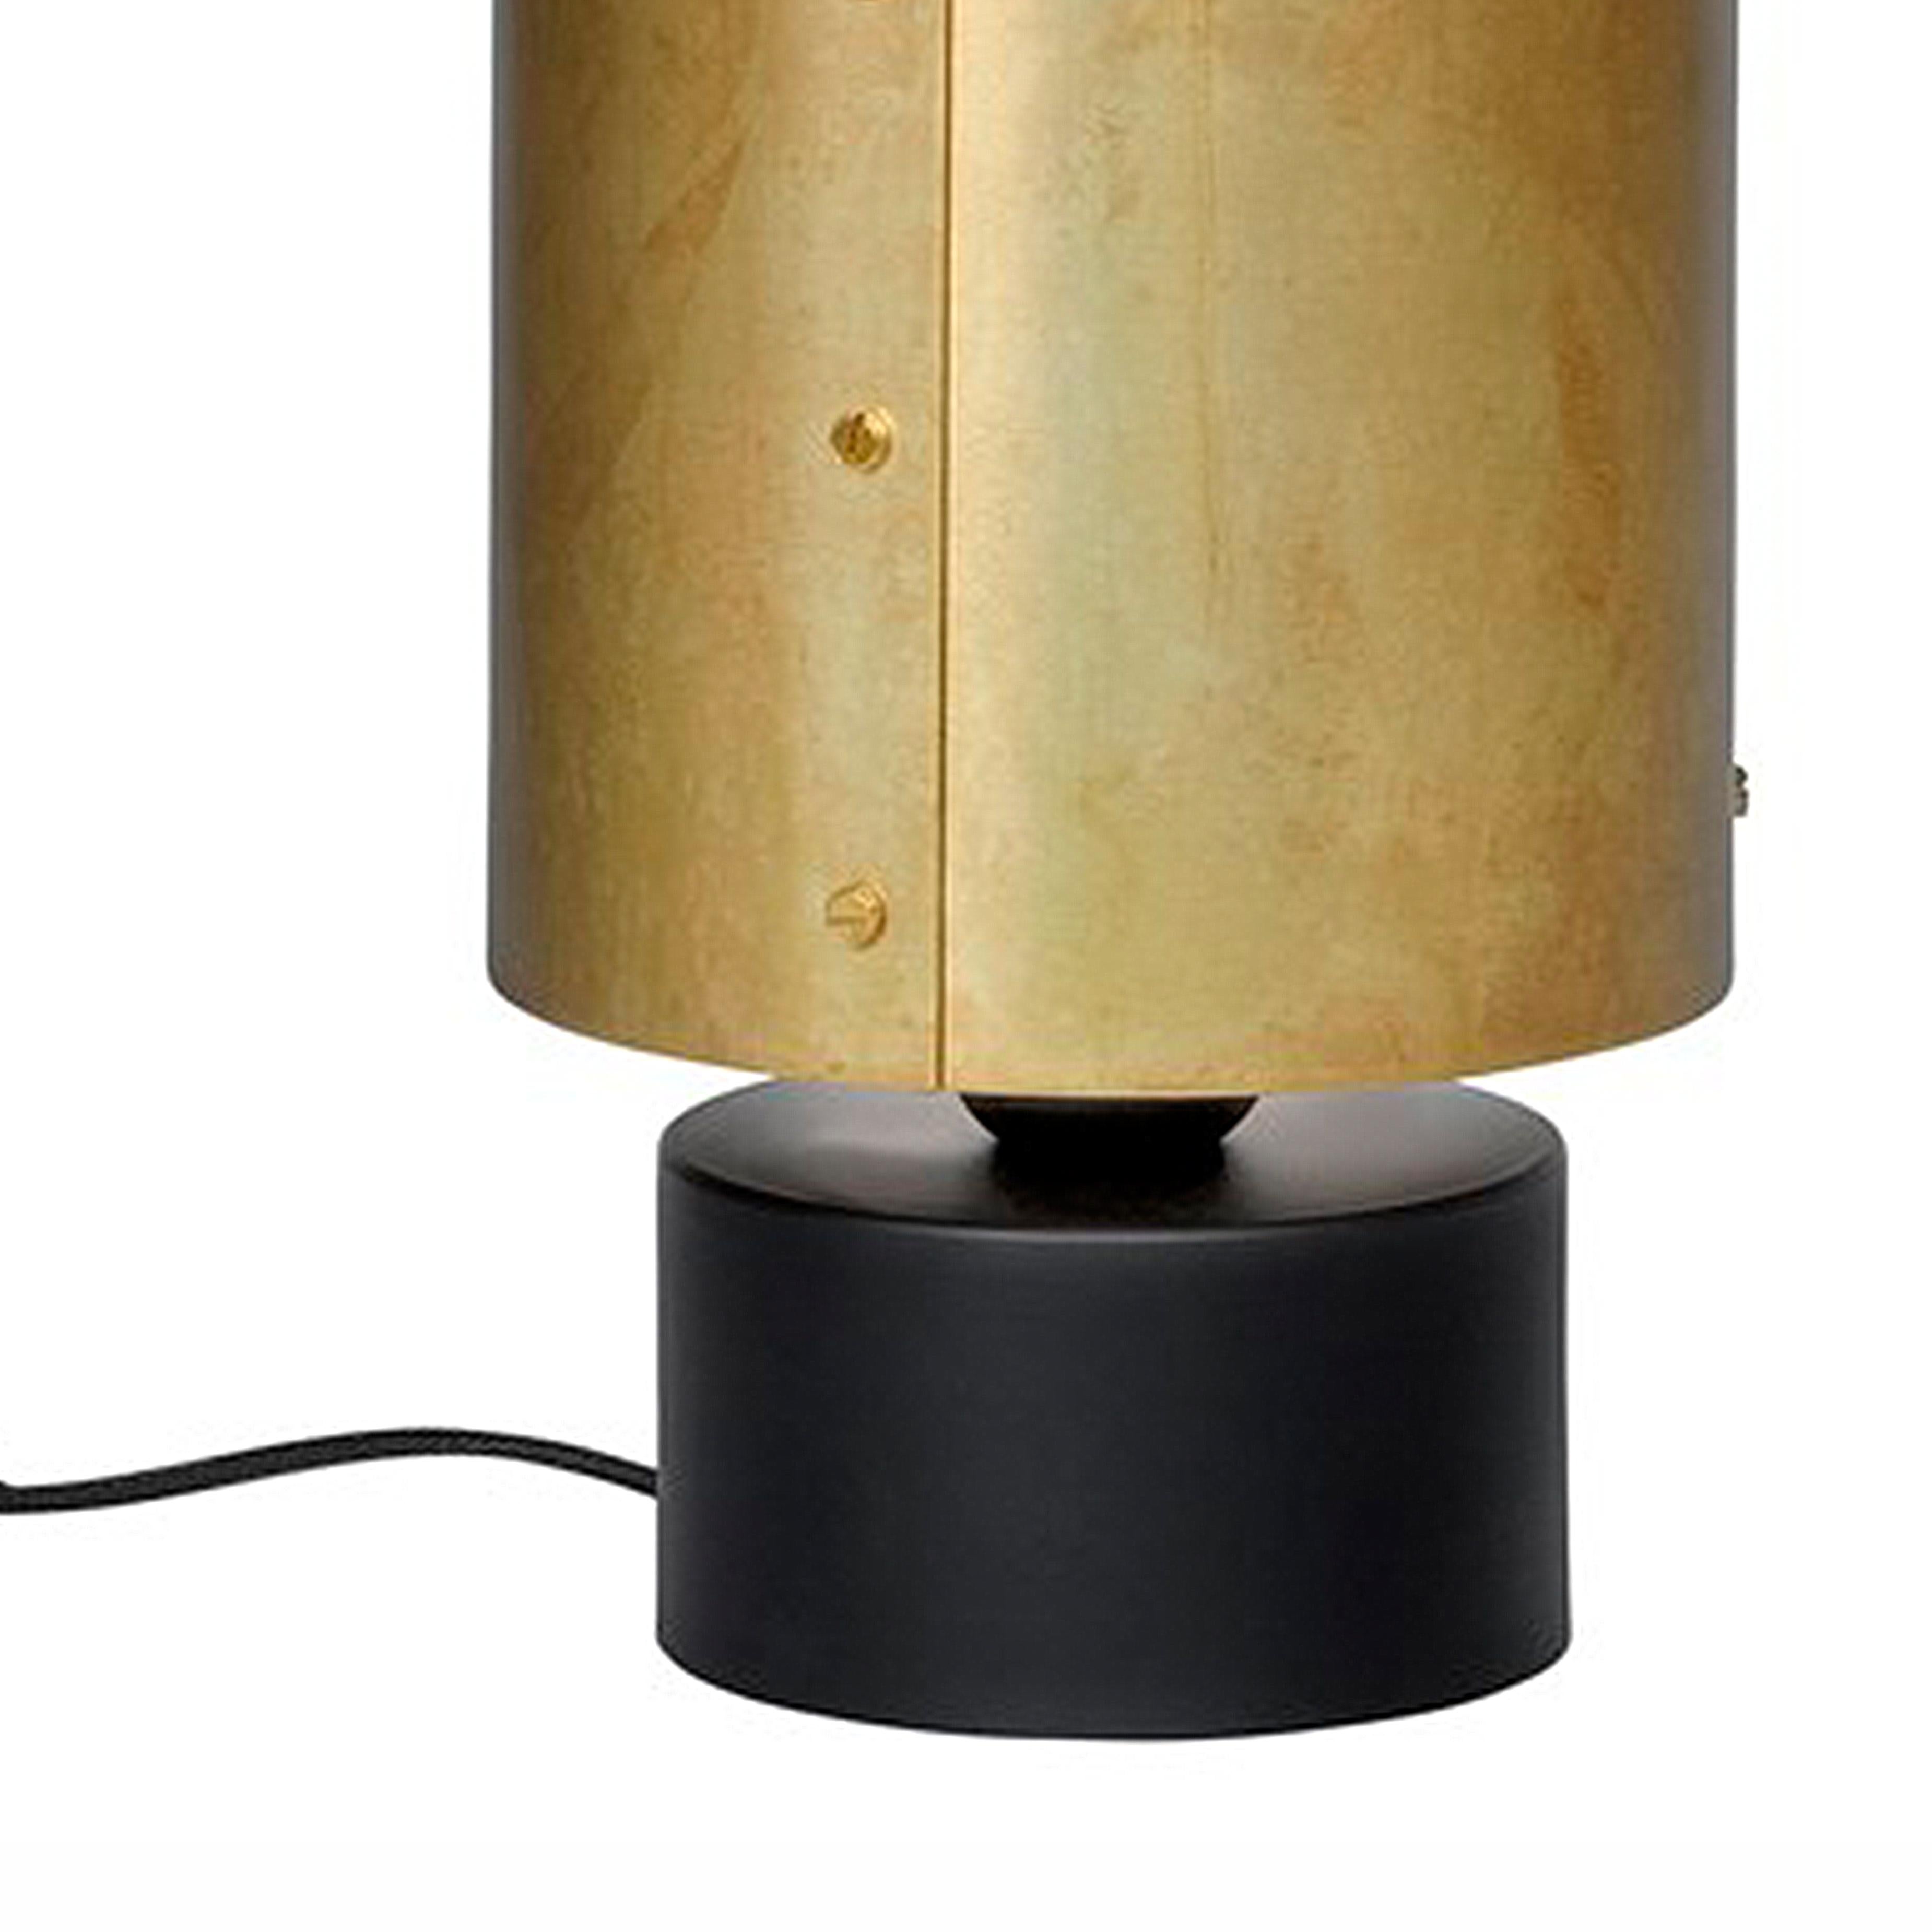 Lampe modèle Svep lampe de table conçue par Konsthantverk et fabriquée par eux-mêmes.

La production de lampes, d'appliques et de lampadaires est réalisée de manière artisanale avec les mêmes matériaux et techniques que les premiers